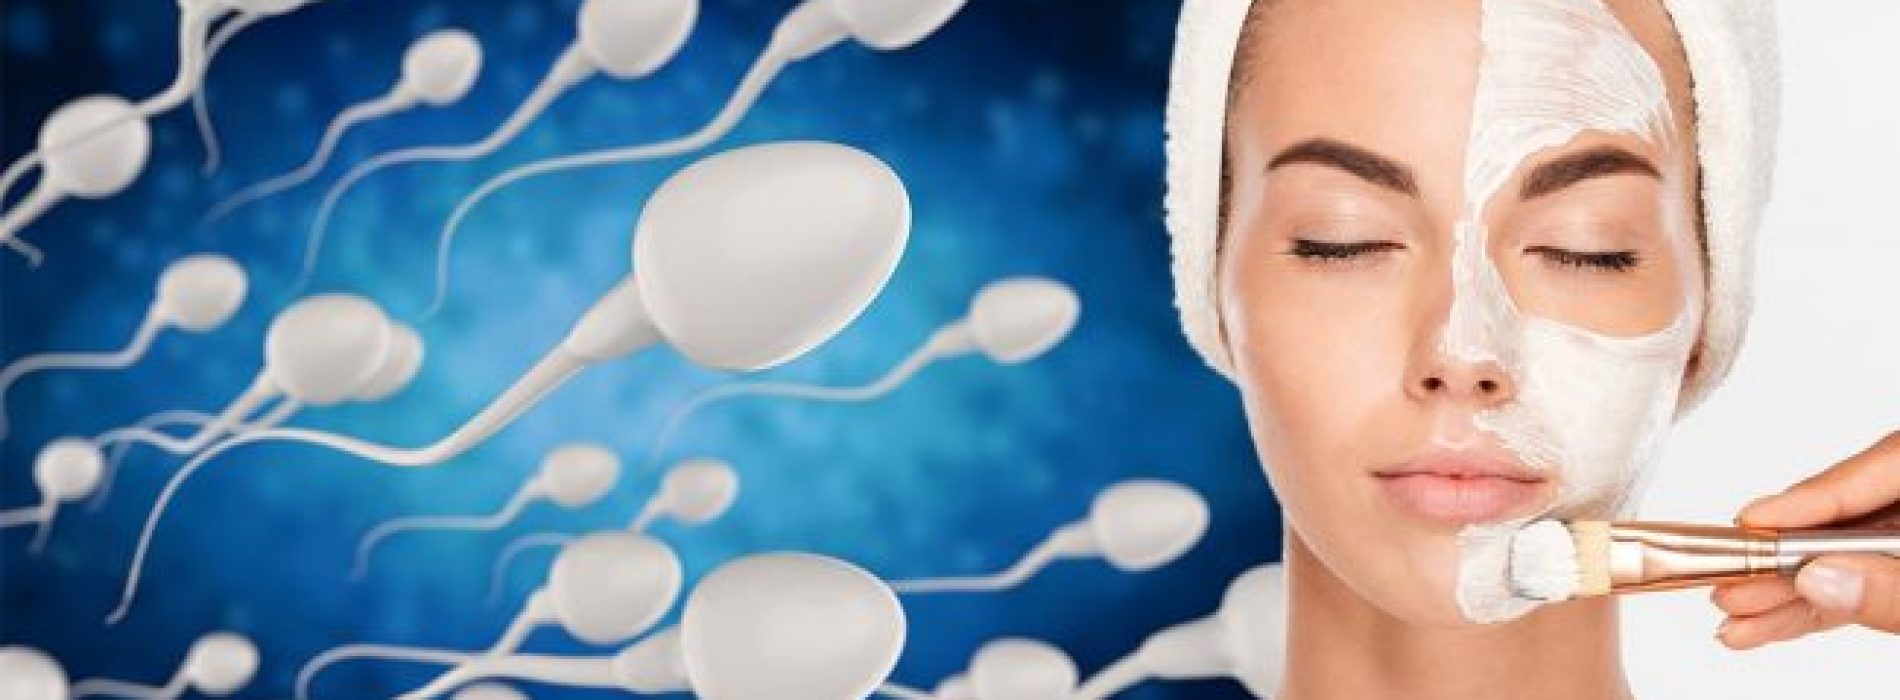 Sperma-gezichtsmaskers worden nu een ding, schoonheidsexpert zegt dat het veroudering kan vertragen